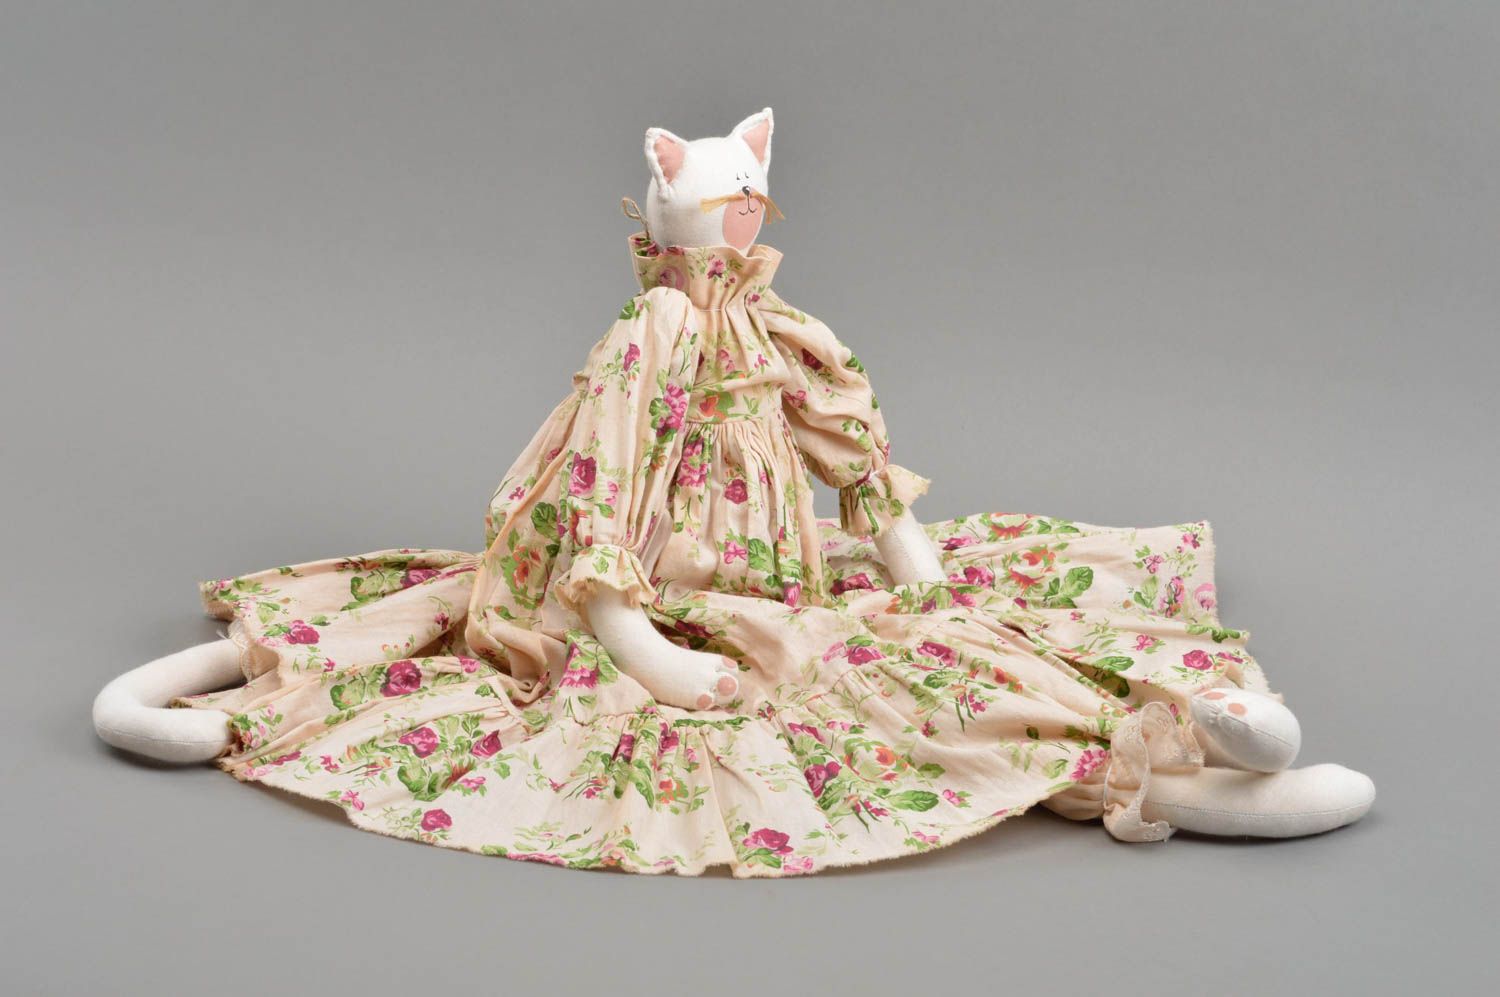 Textil Kuscheltier Katze weiß im blumigen Kleid handmade schön originell foto 4